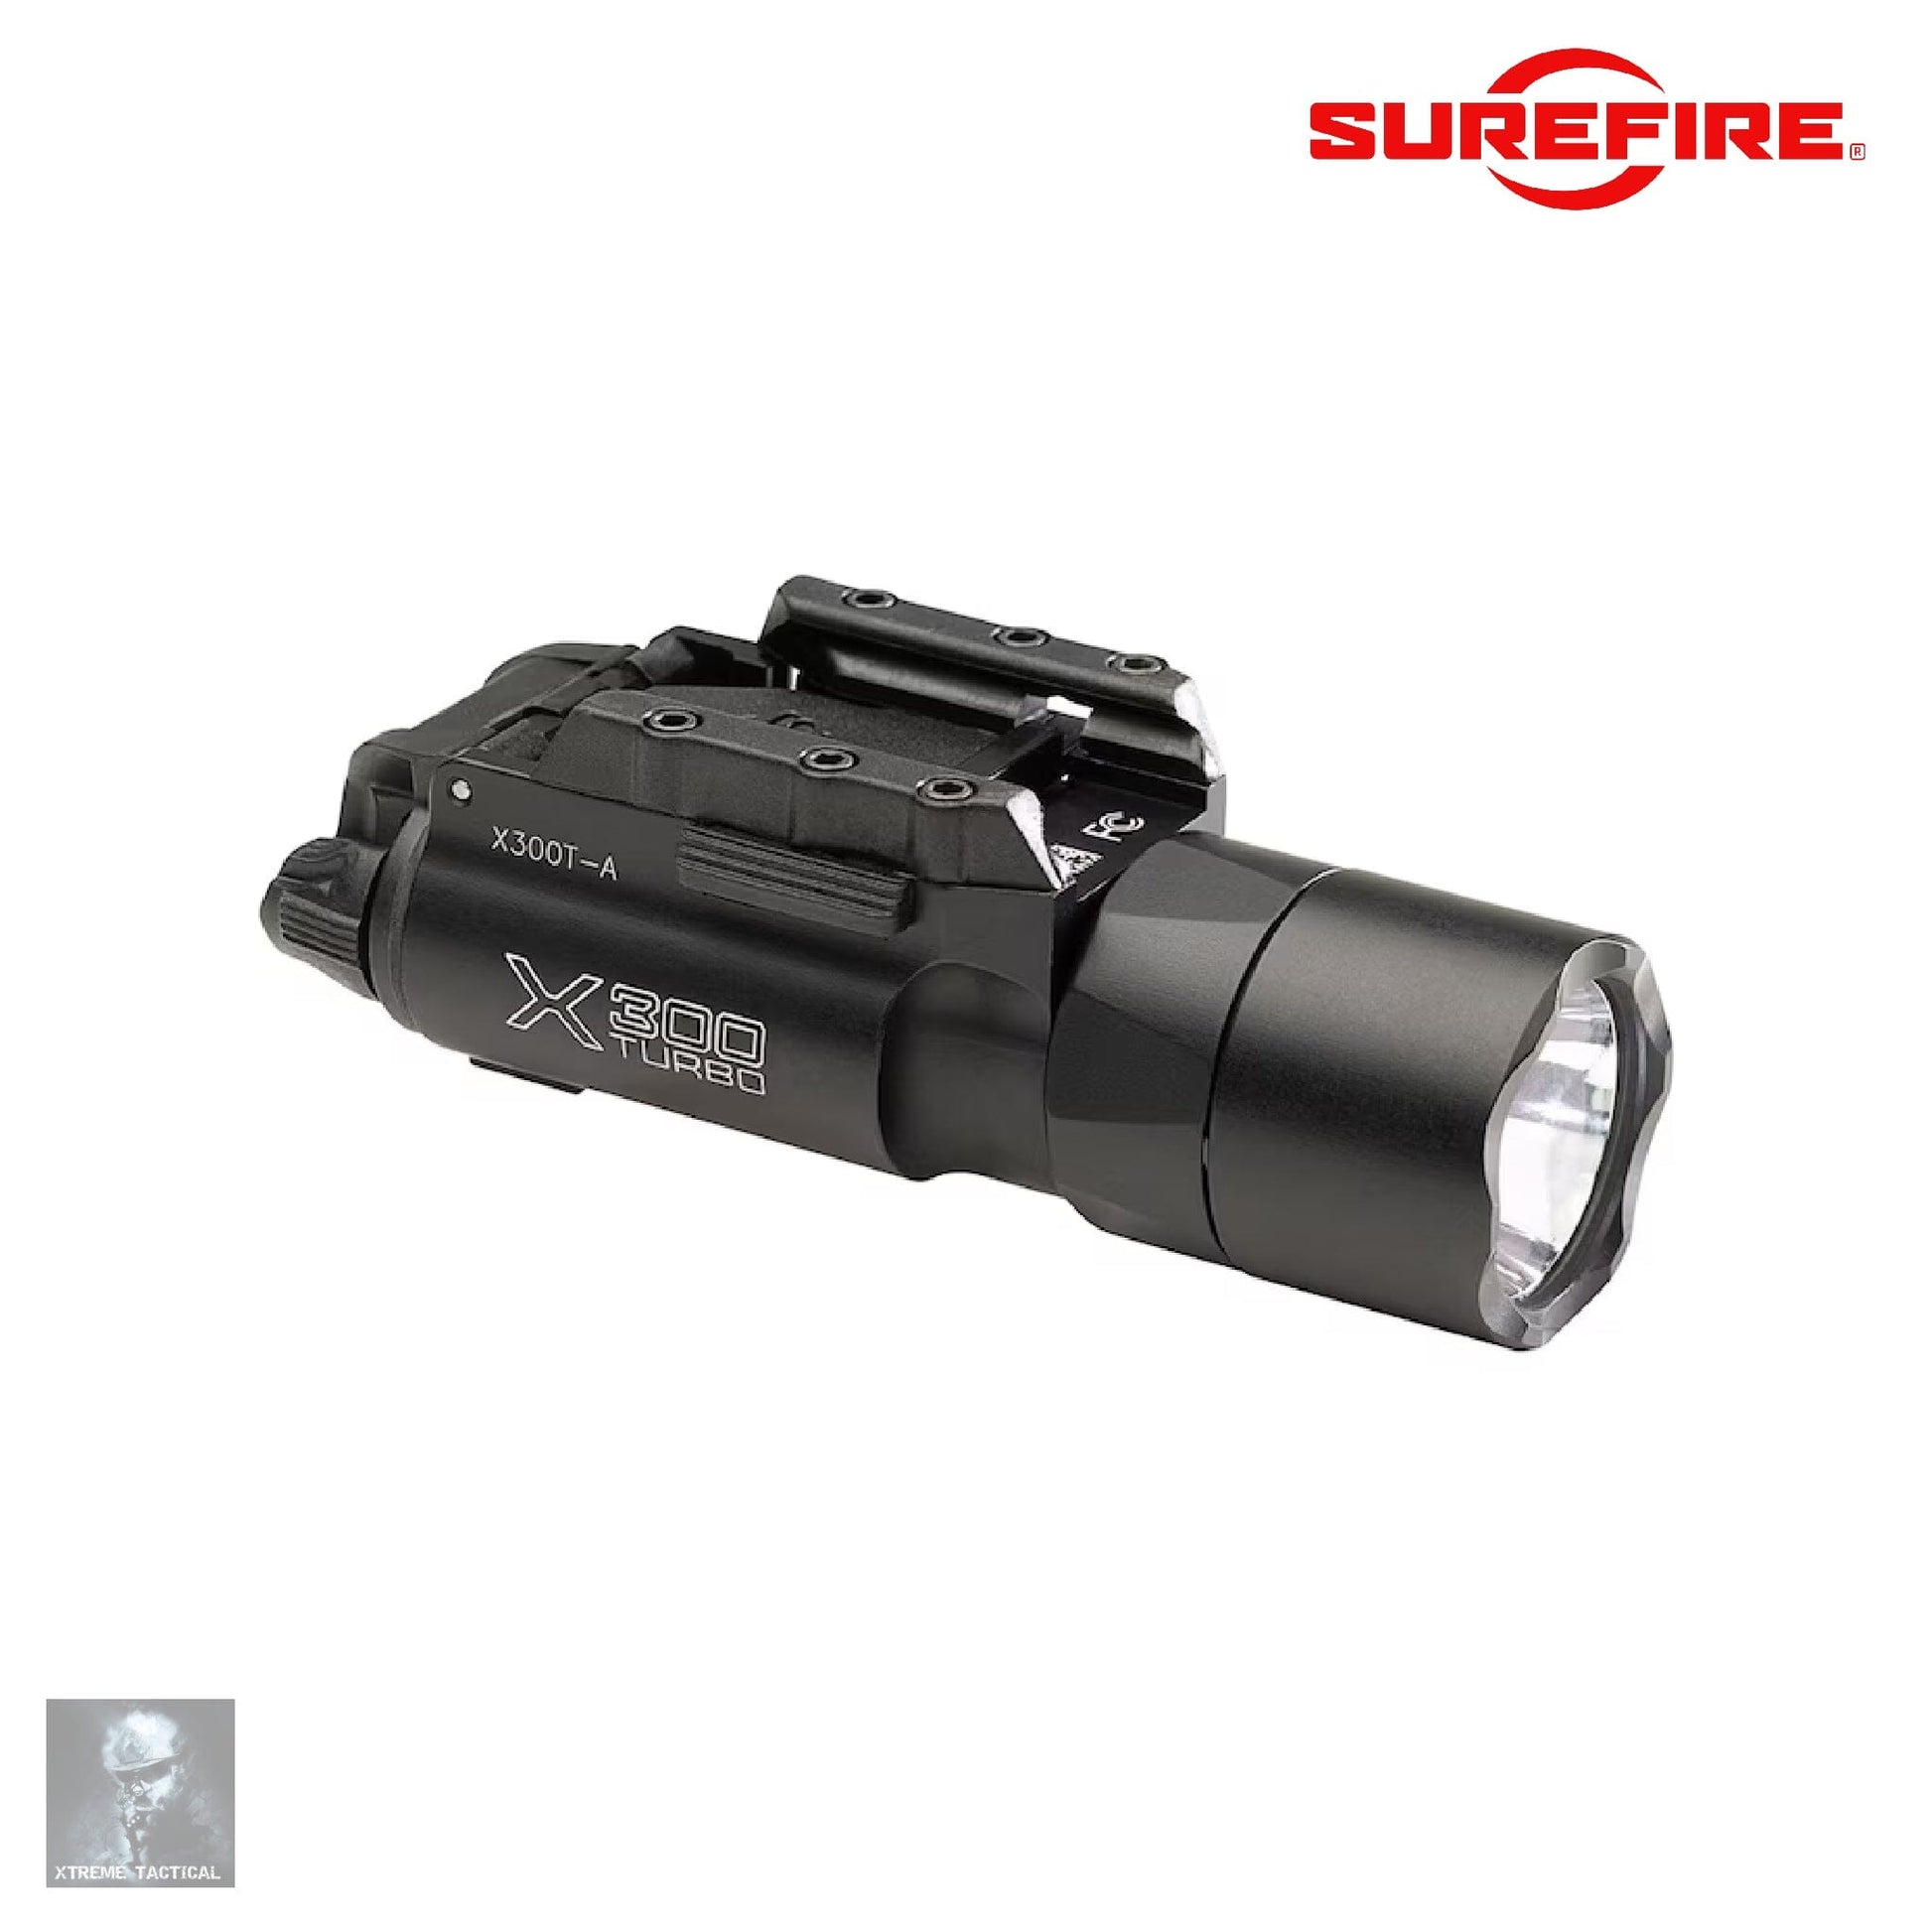 SureFire X300T-A Turbo Weapon Light Black Weapon Light SureFire 